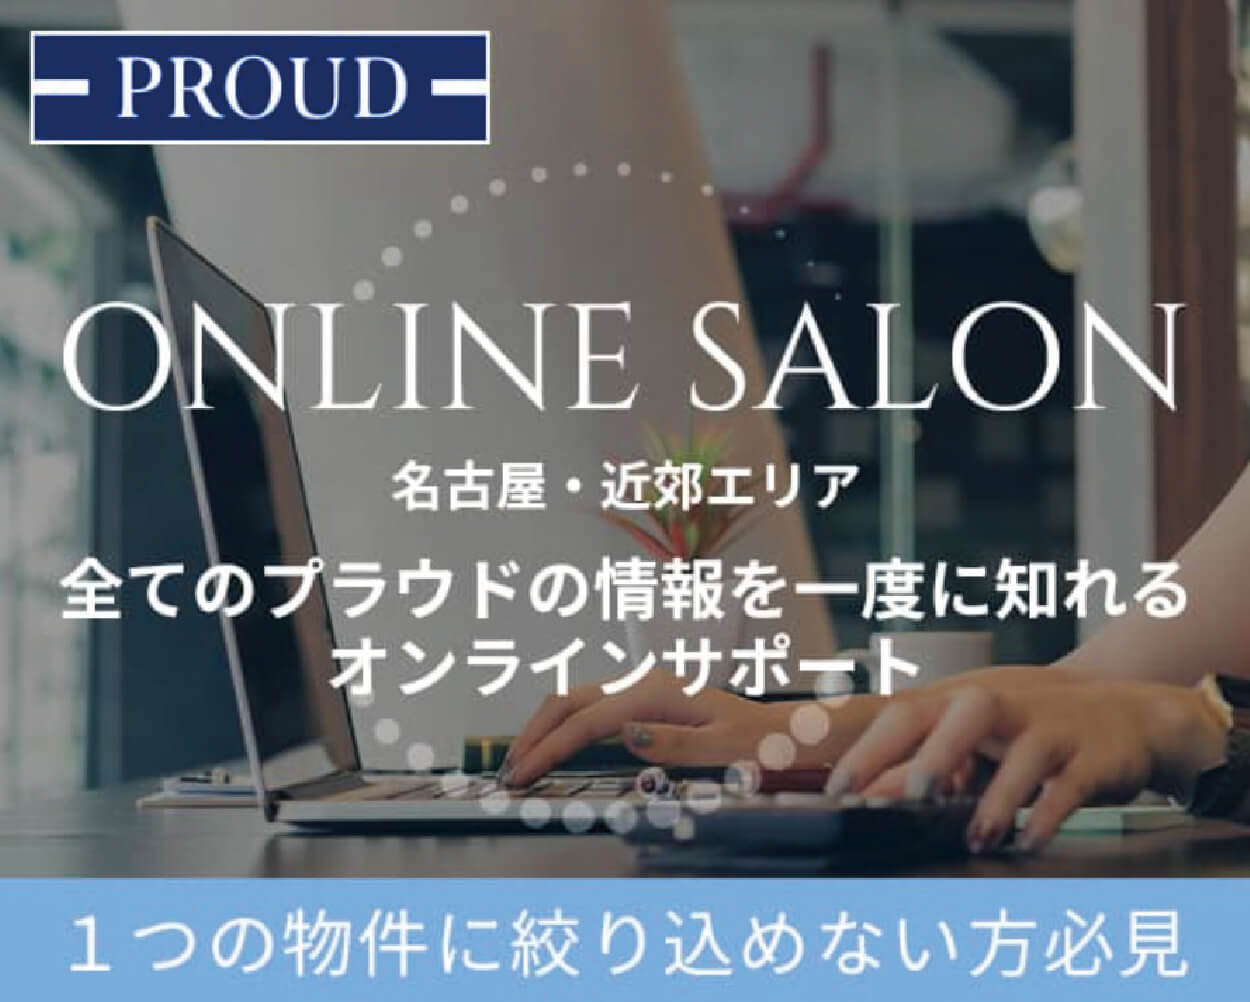 ONLINE SALON 名古屋・近郊エリア 全てのプラウドの情報を一度に知れるオンラインサポート